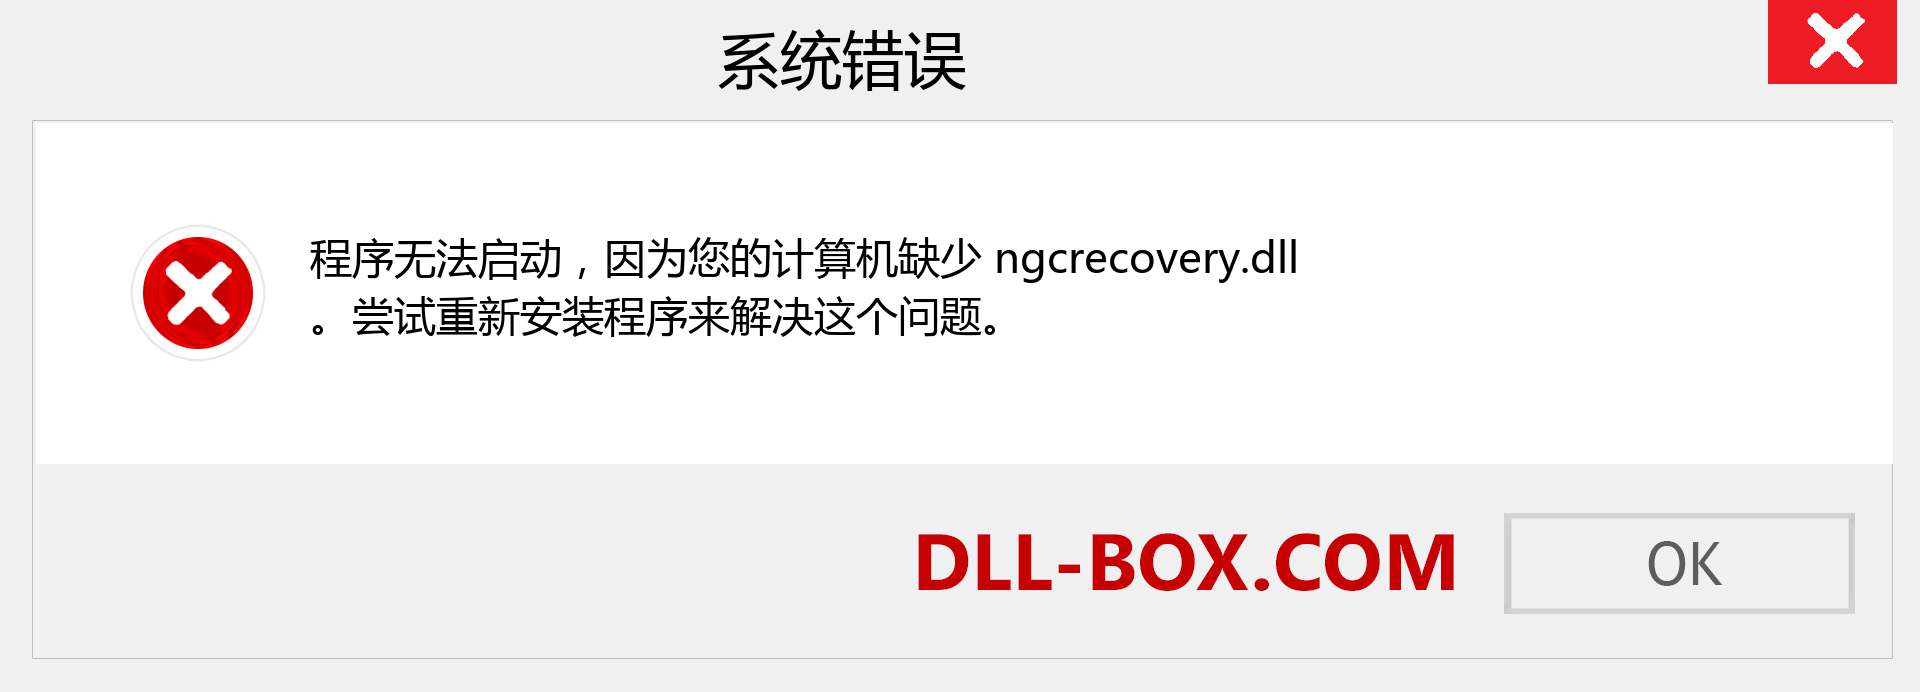 ngcrecovery.dll 文件丢失？。 适用于 Windows 7、8、10 的下载 - 修复 Windows、照片、图像上的 ngcrecovery dll 丢失错误